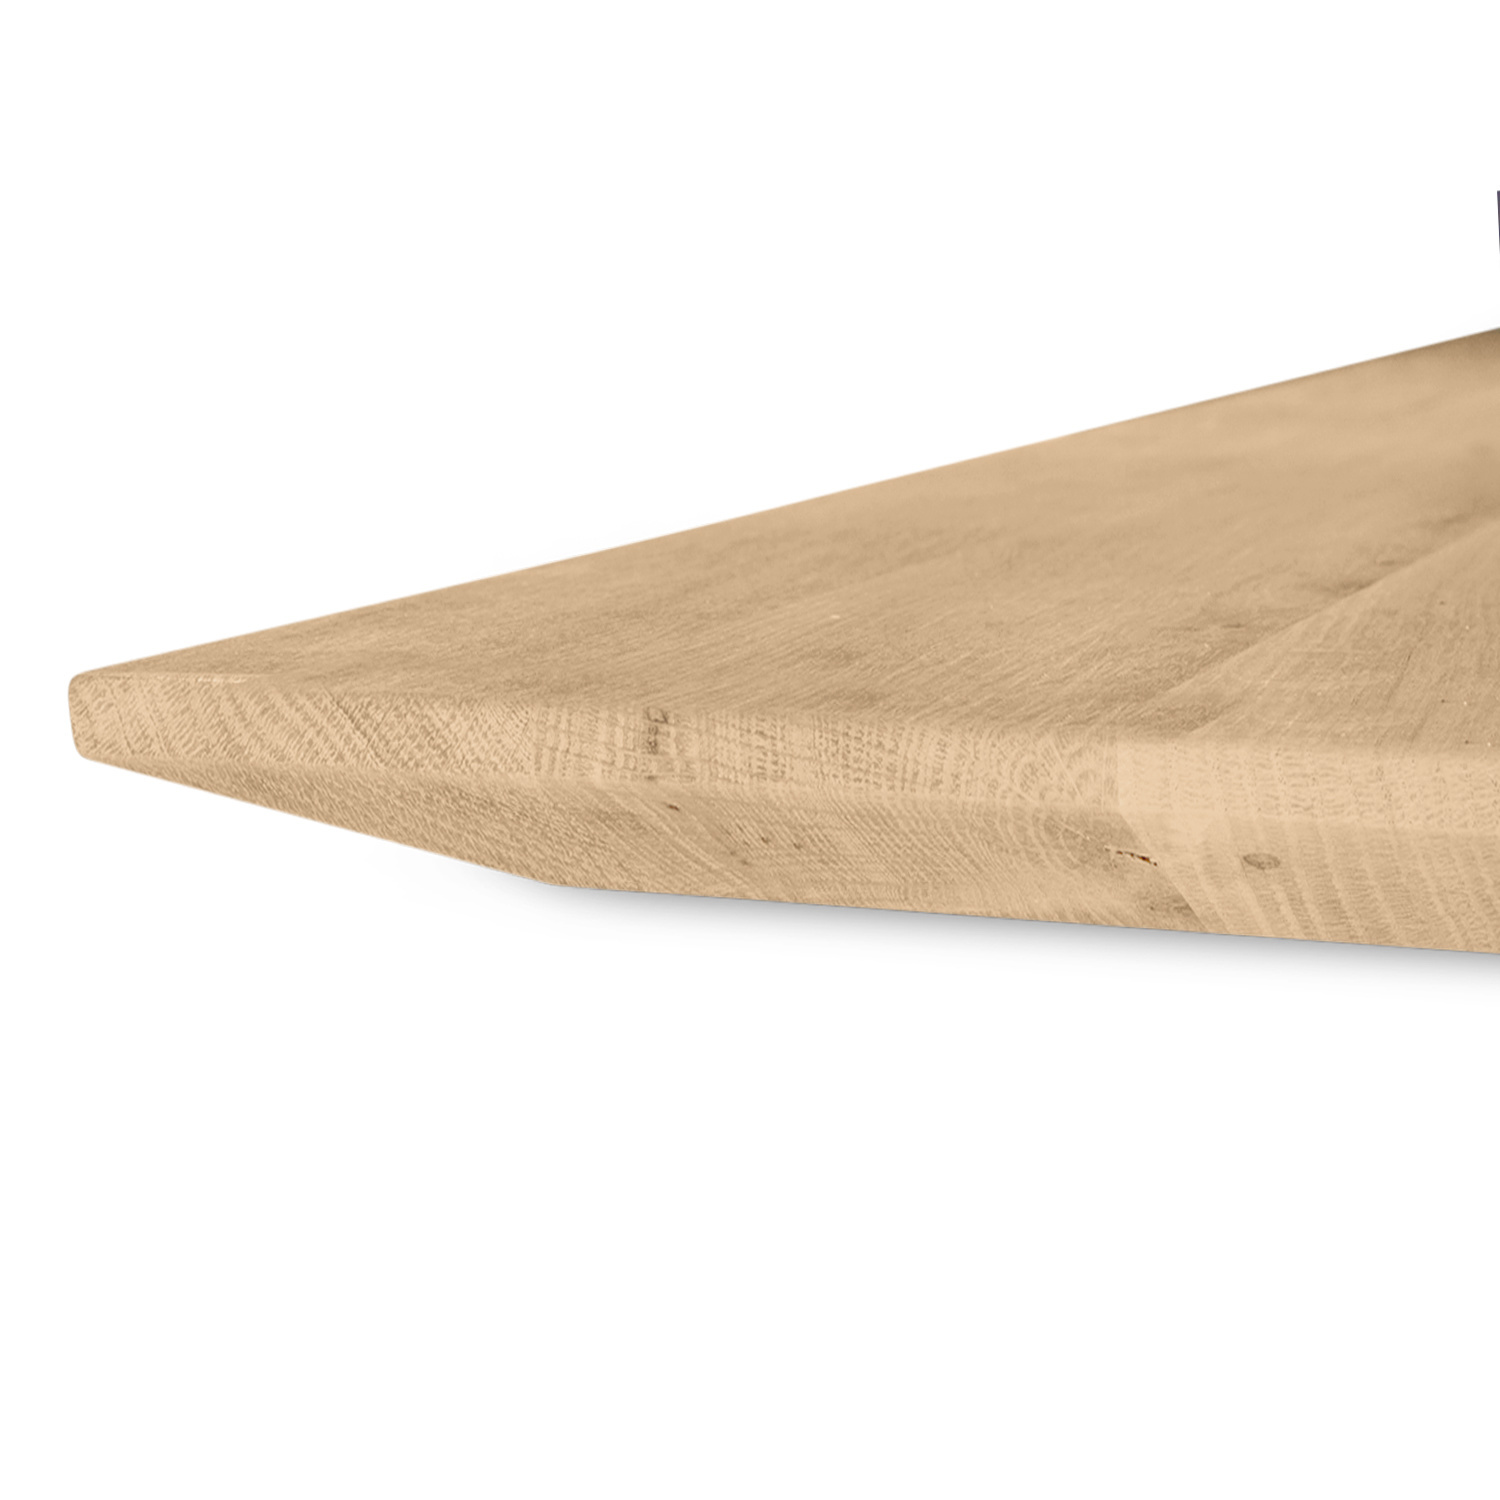  Eiken tafelblad met verjongde rand - 2,7 cm dik (1-laag) - Diverse afmetingen - foutvrij Europees eikenhout - met brede lamellen (circa 10-12 cm) - verlijmd kd 8-12%